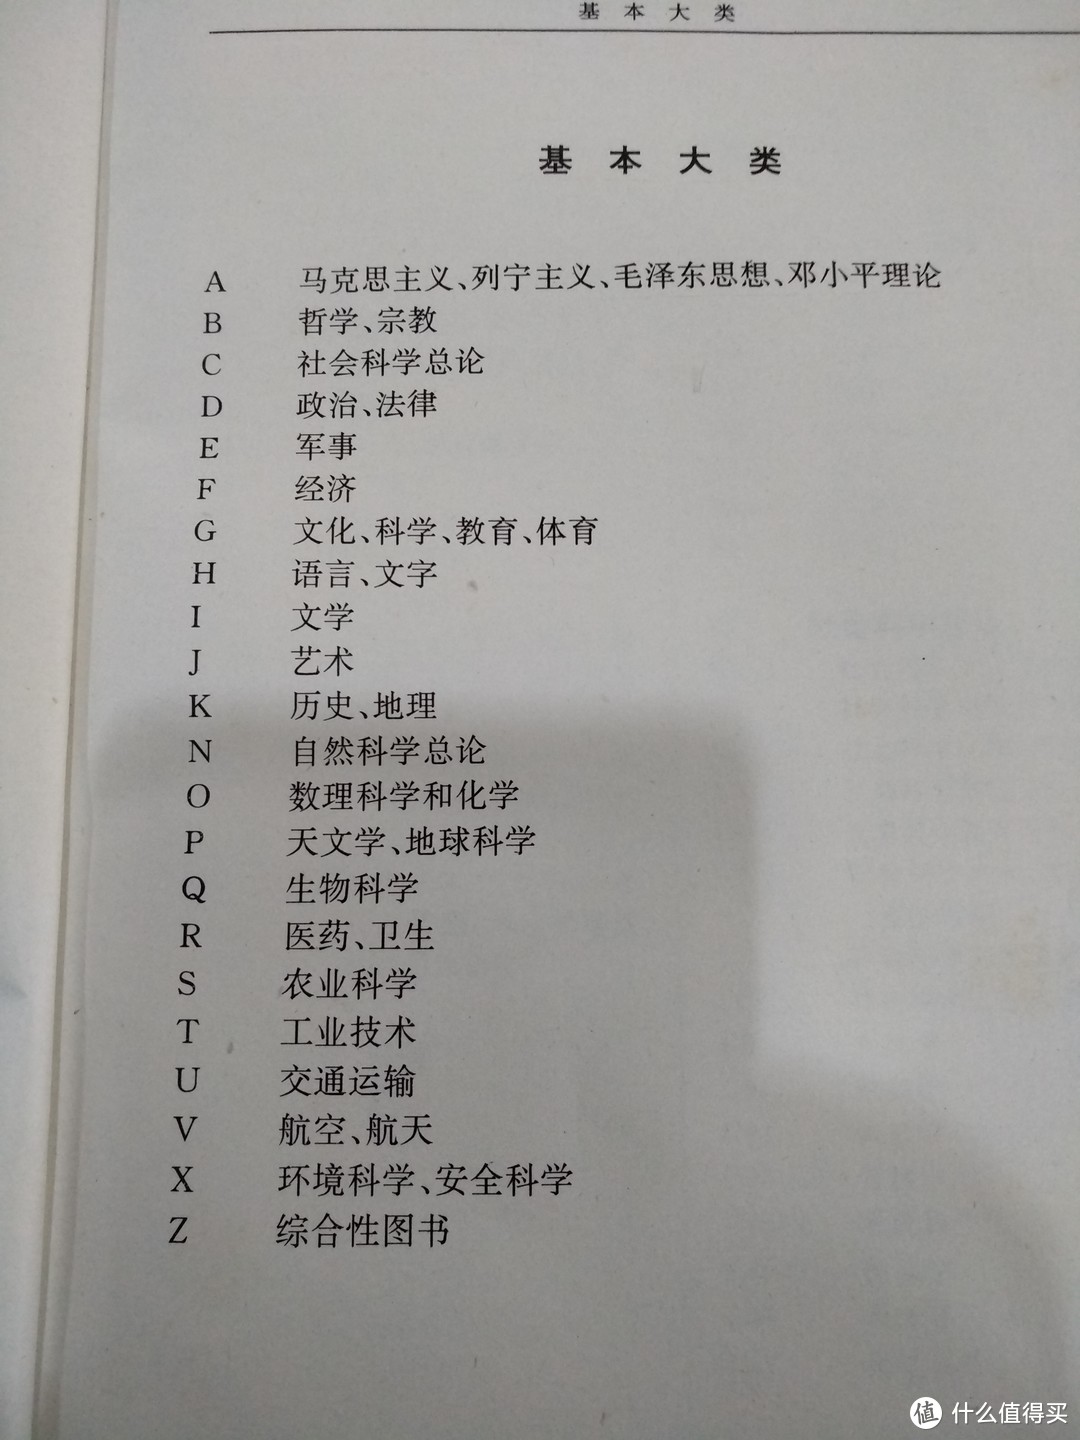 图书馆猿の好书推荐：《中国图书馆分类法》& 简单入馆教育